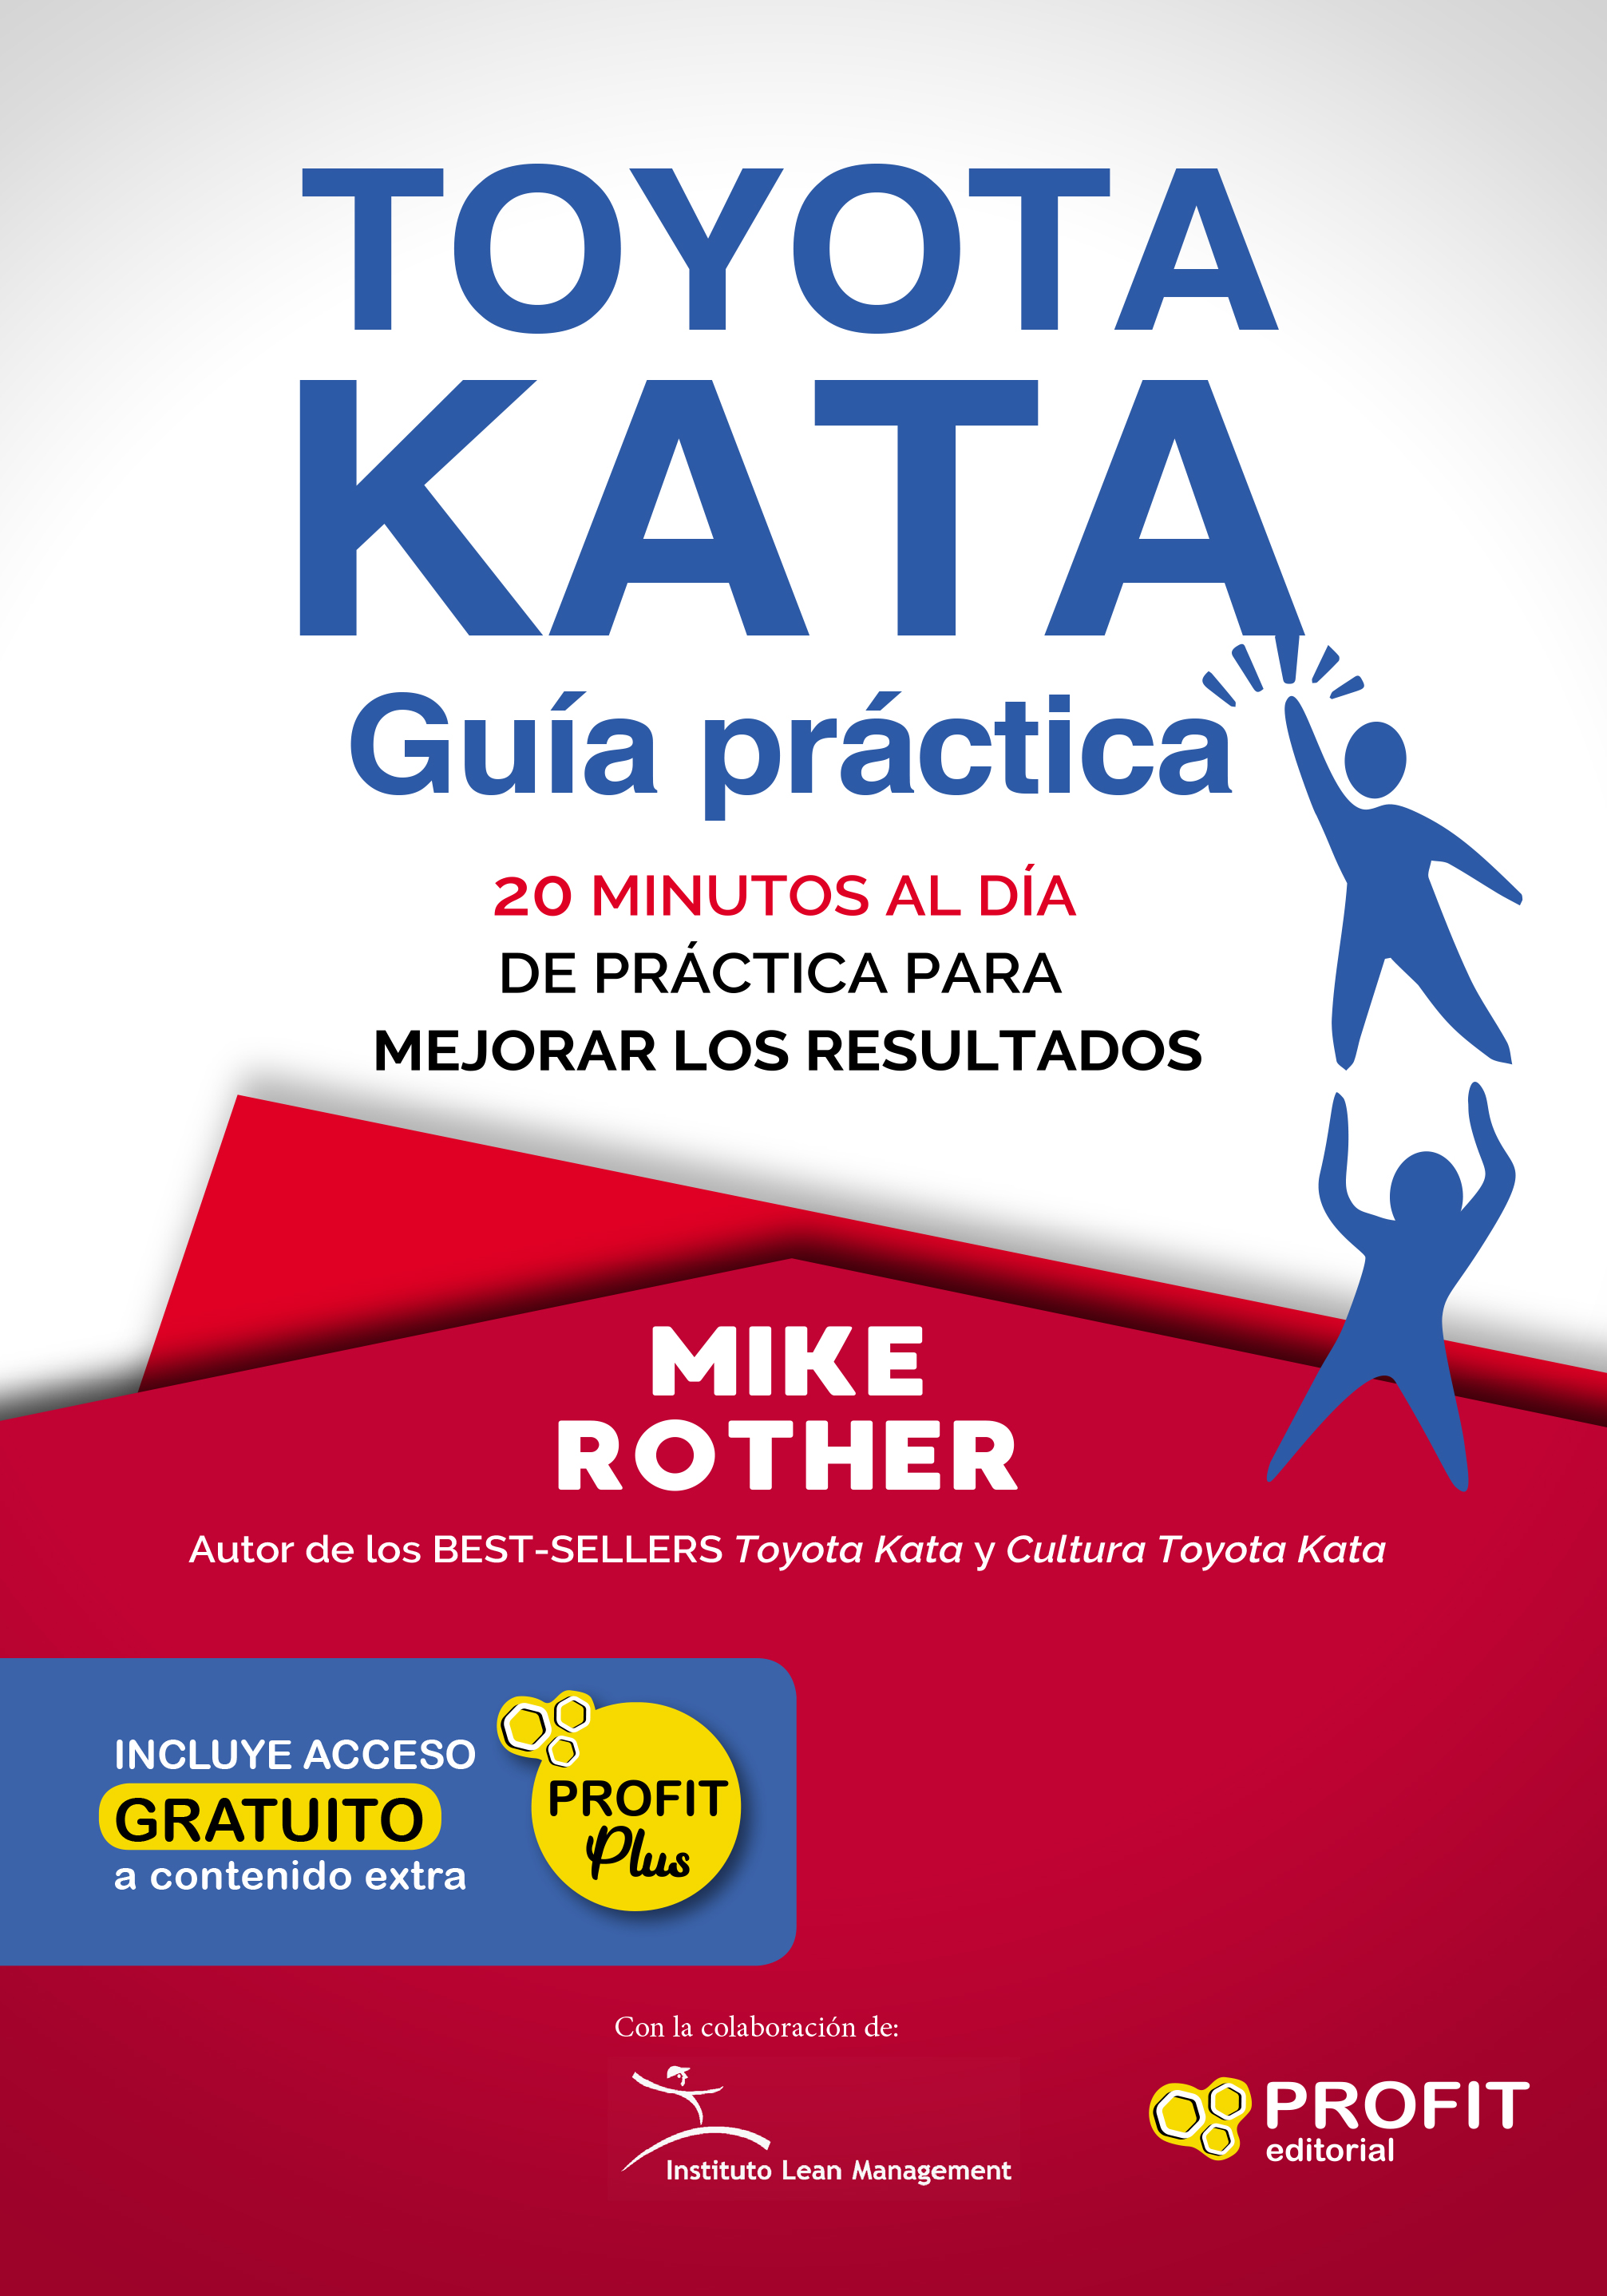 La guía práctica del Toyota Kata